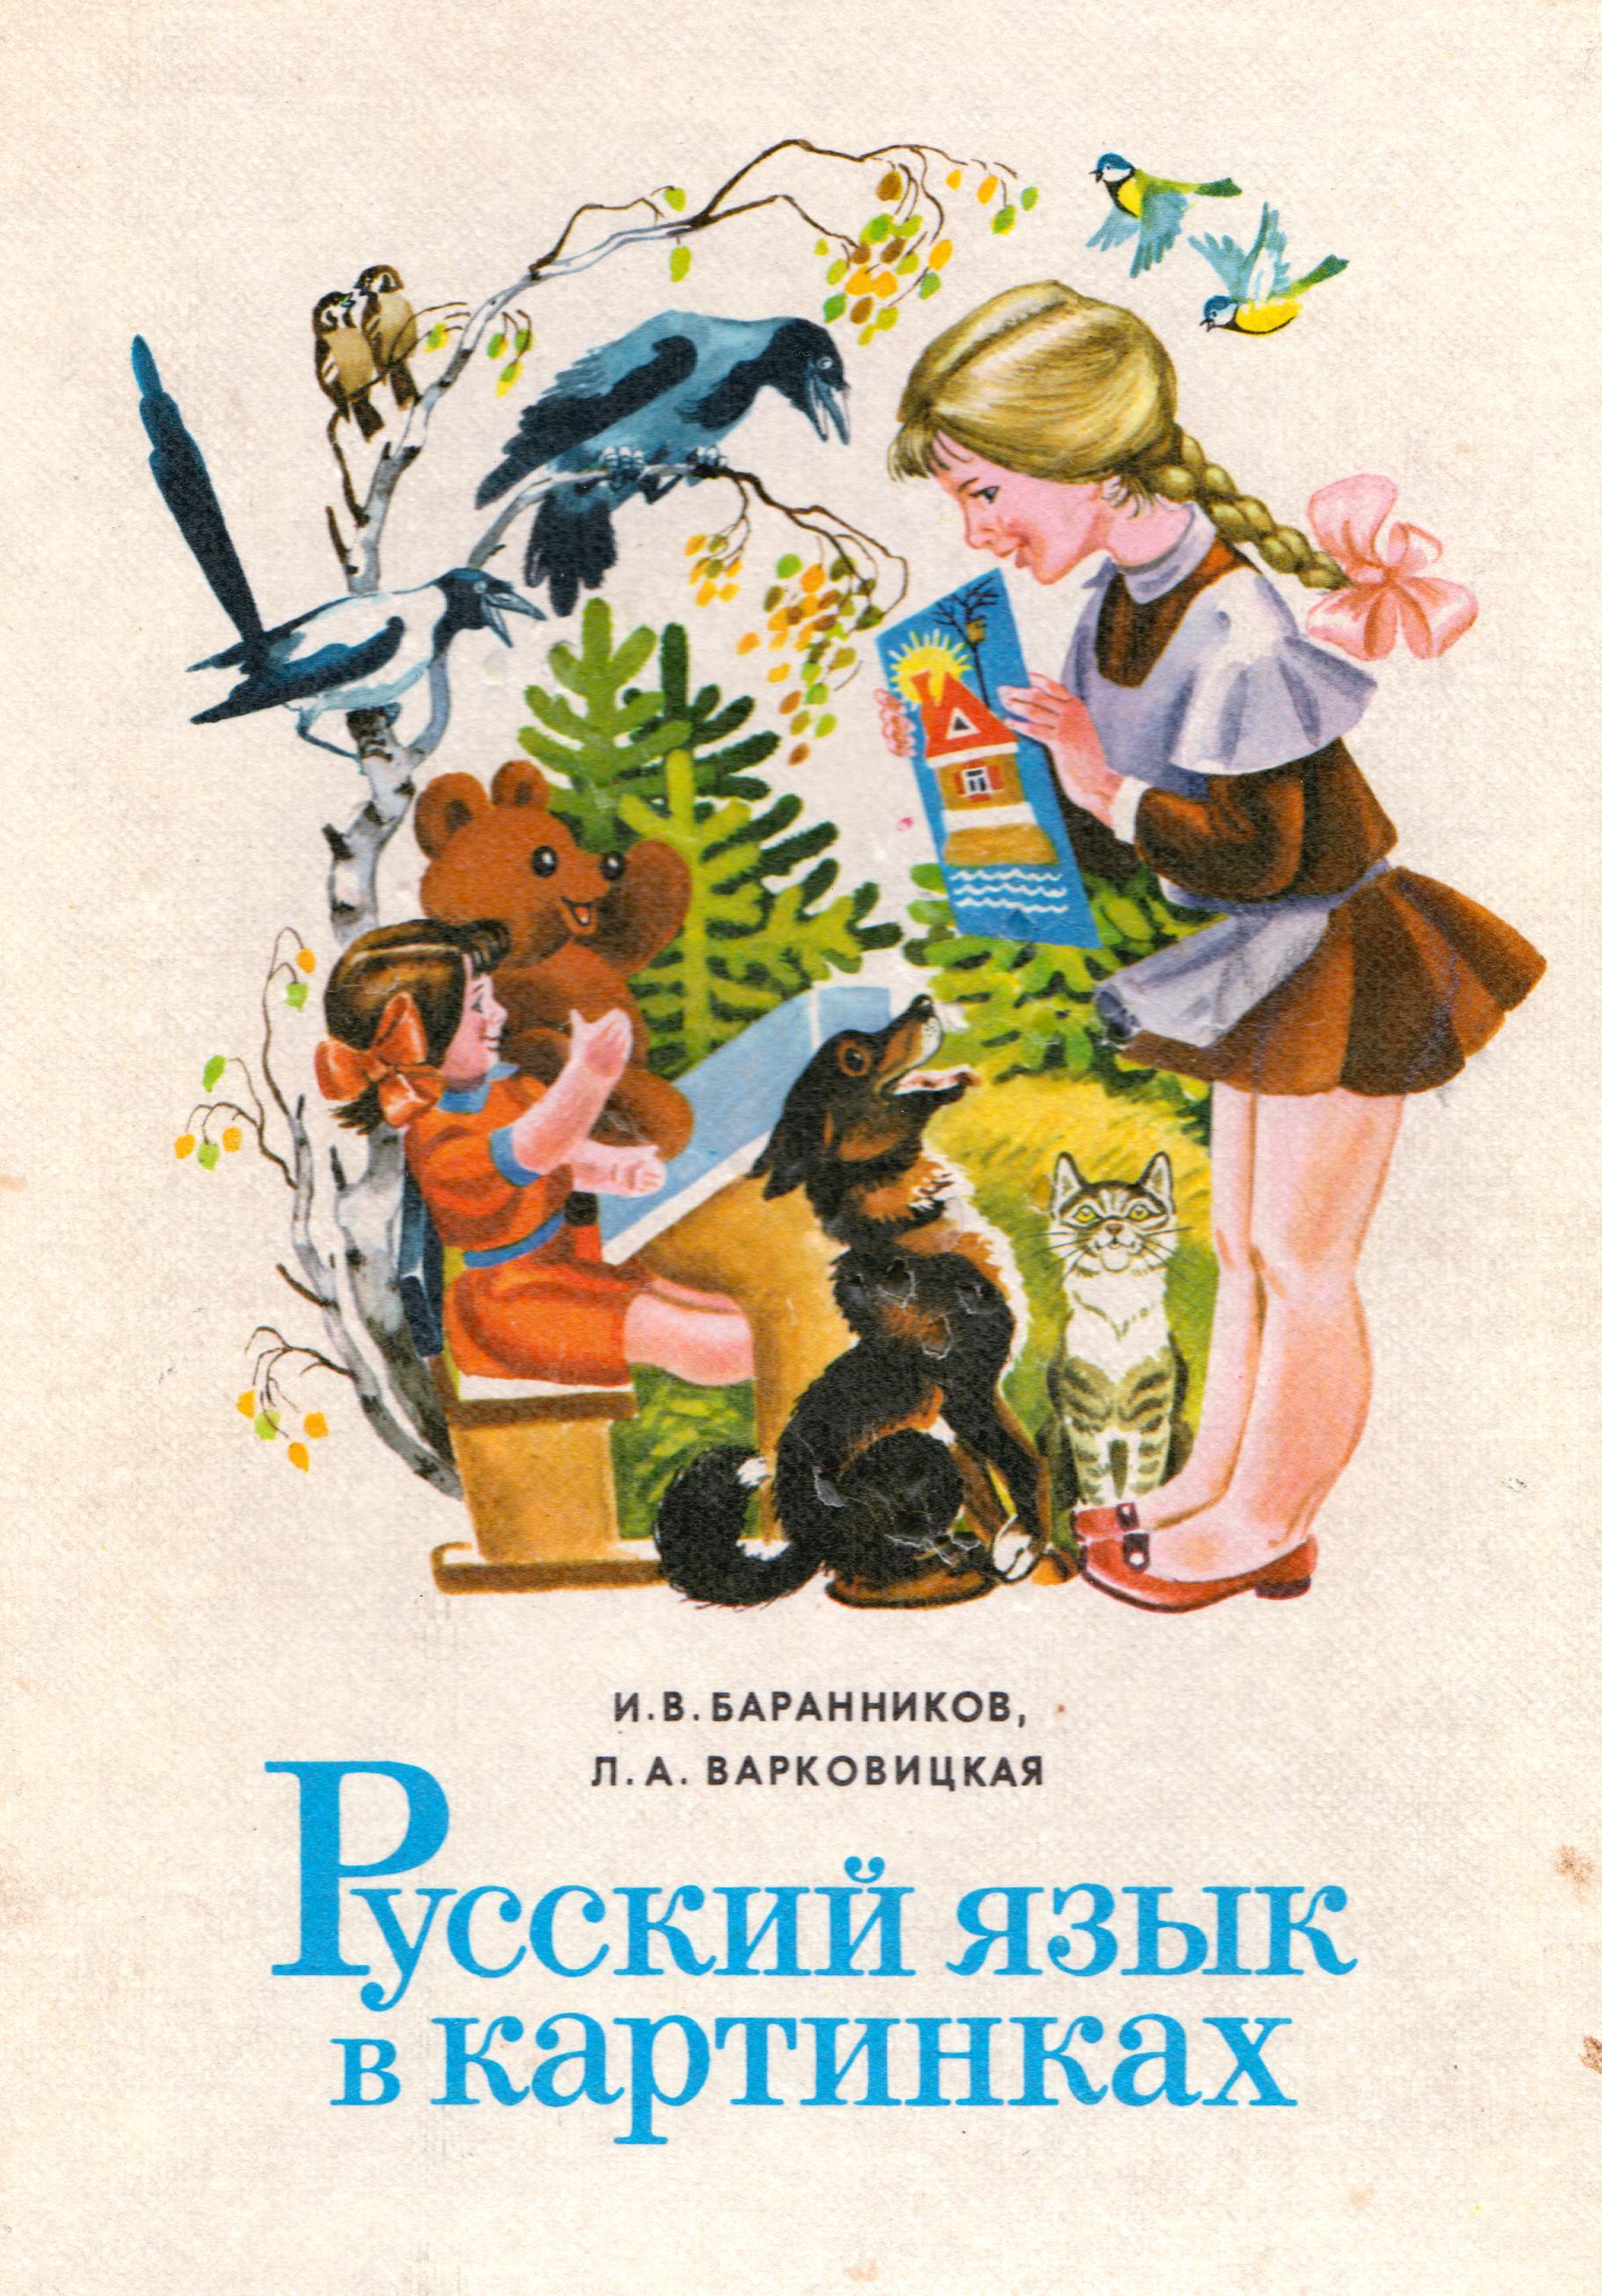 Russkiy ayzik v kartinkah-1986.JPG